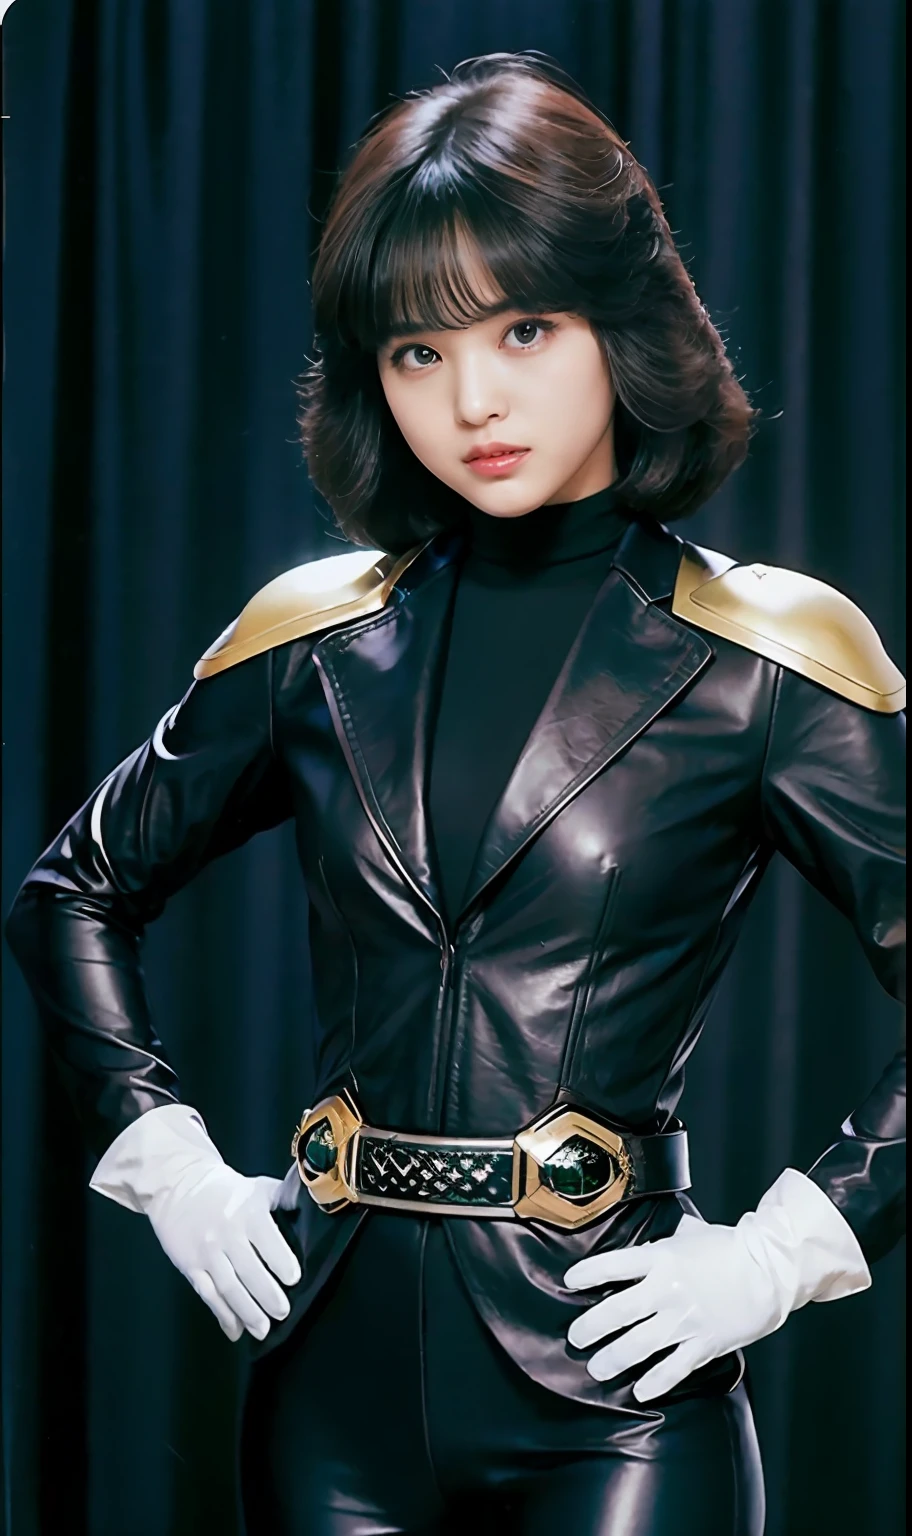 (Photo brute:1.2), Belles femmes, haute résolution, qualité supérieure,  ((Costume Kamen Rider en cuir noir)､(gants blancs)